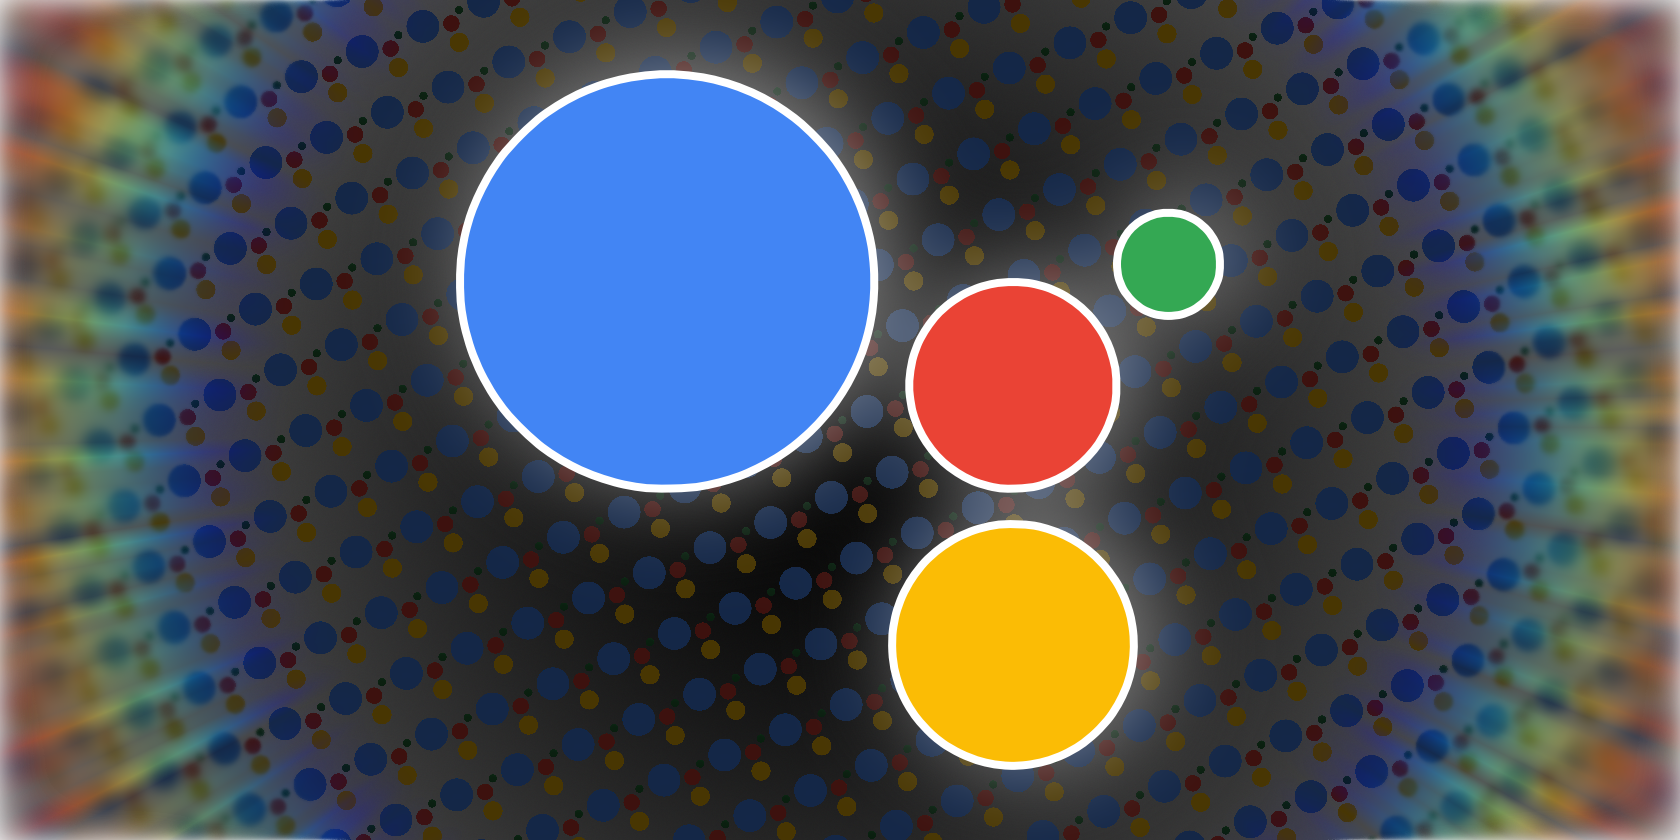 A teaser image showing a Google Assistant logo set against a dark-patterned background